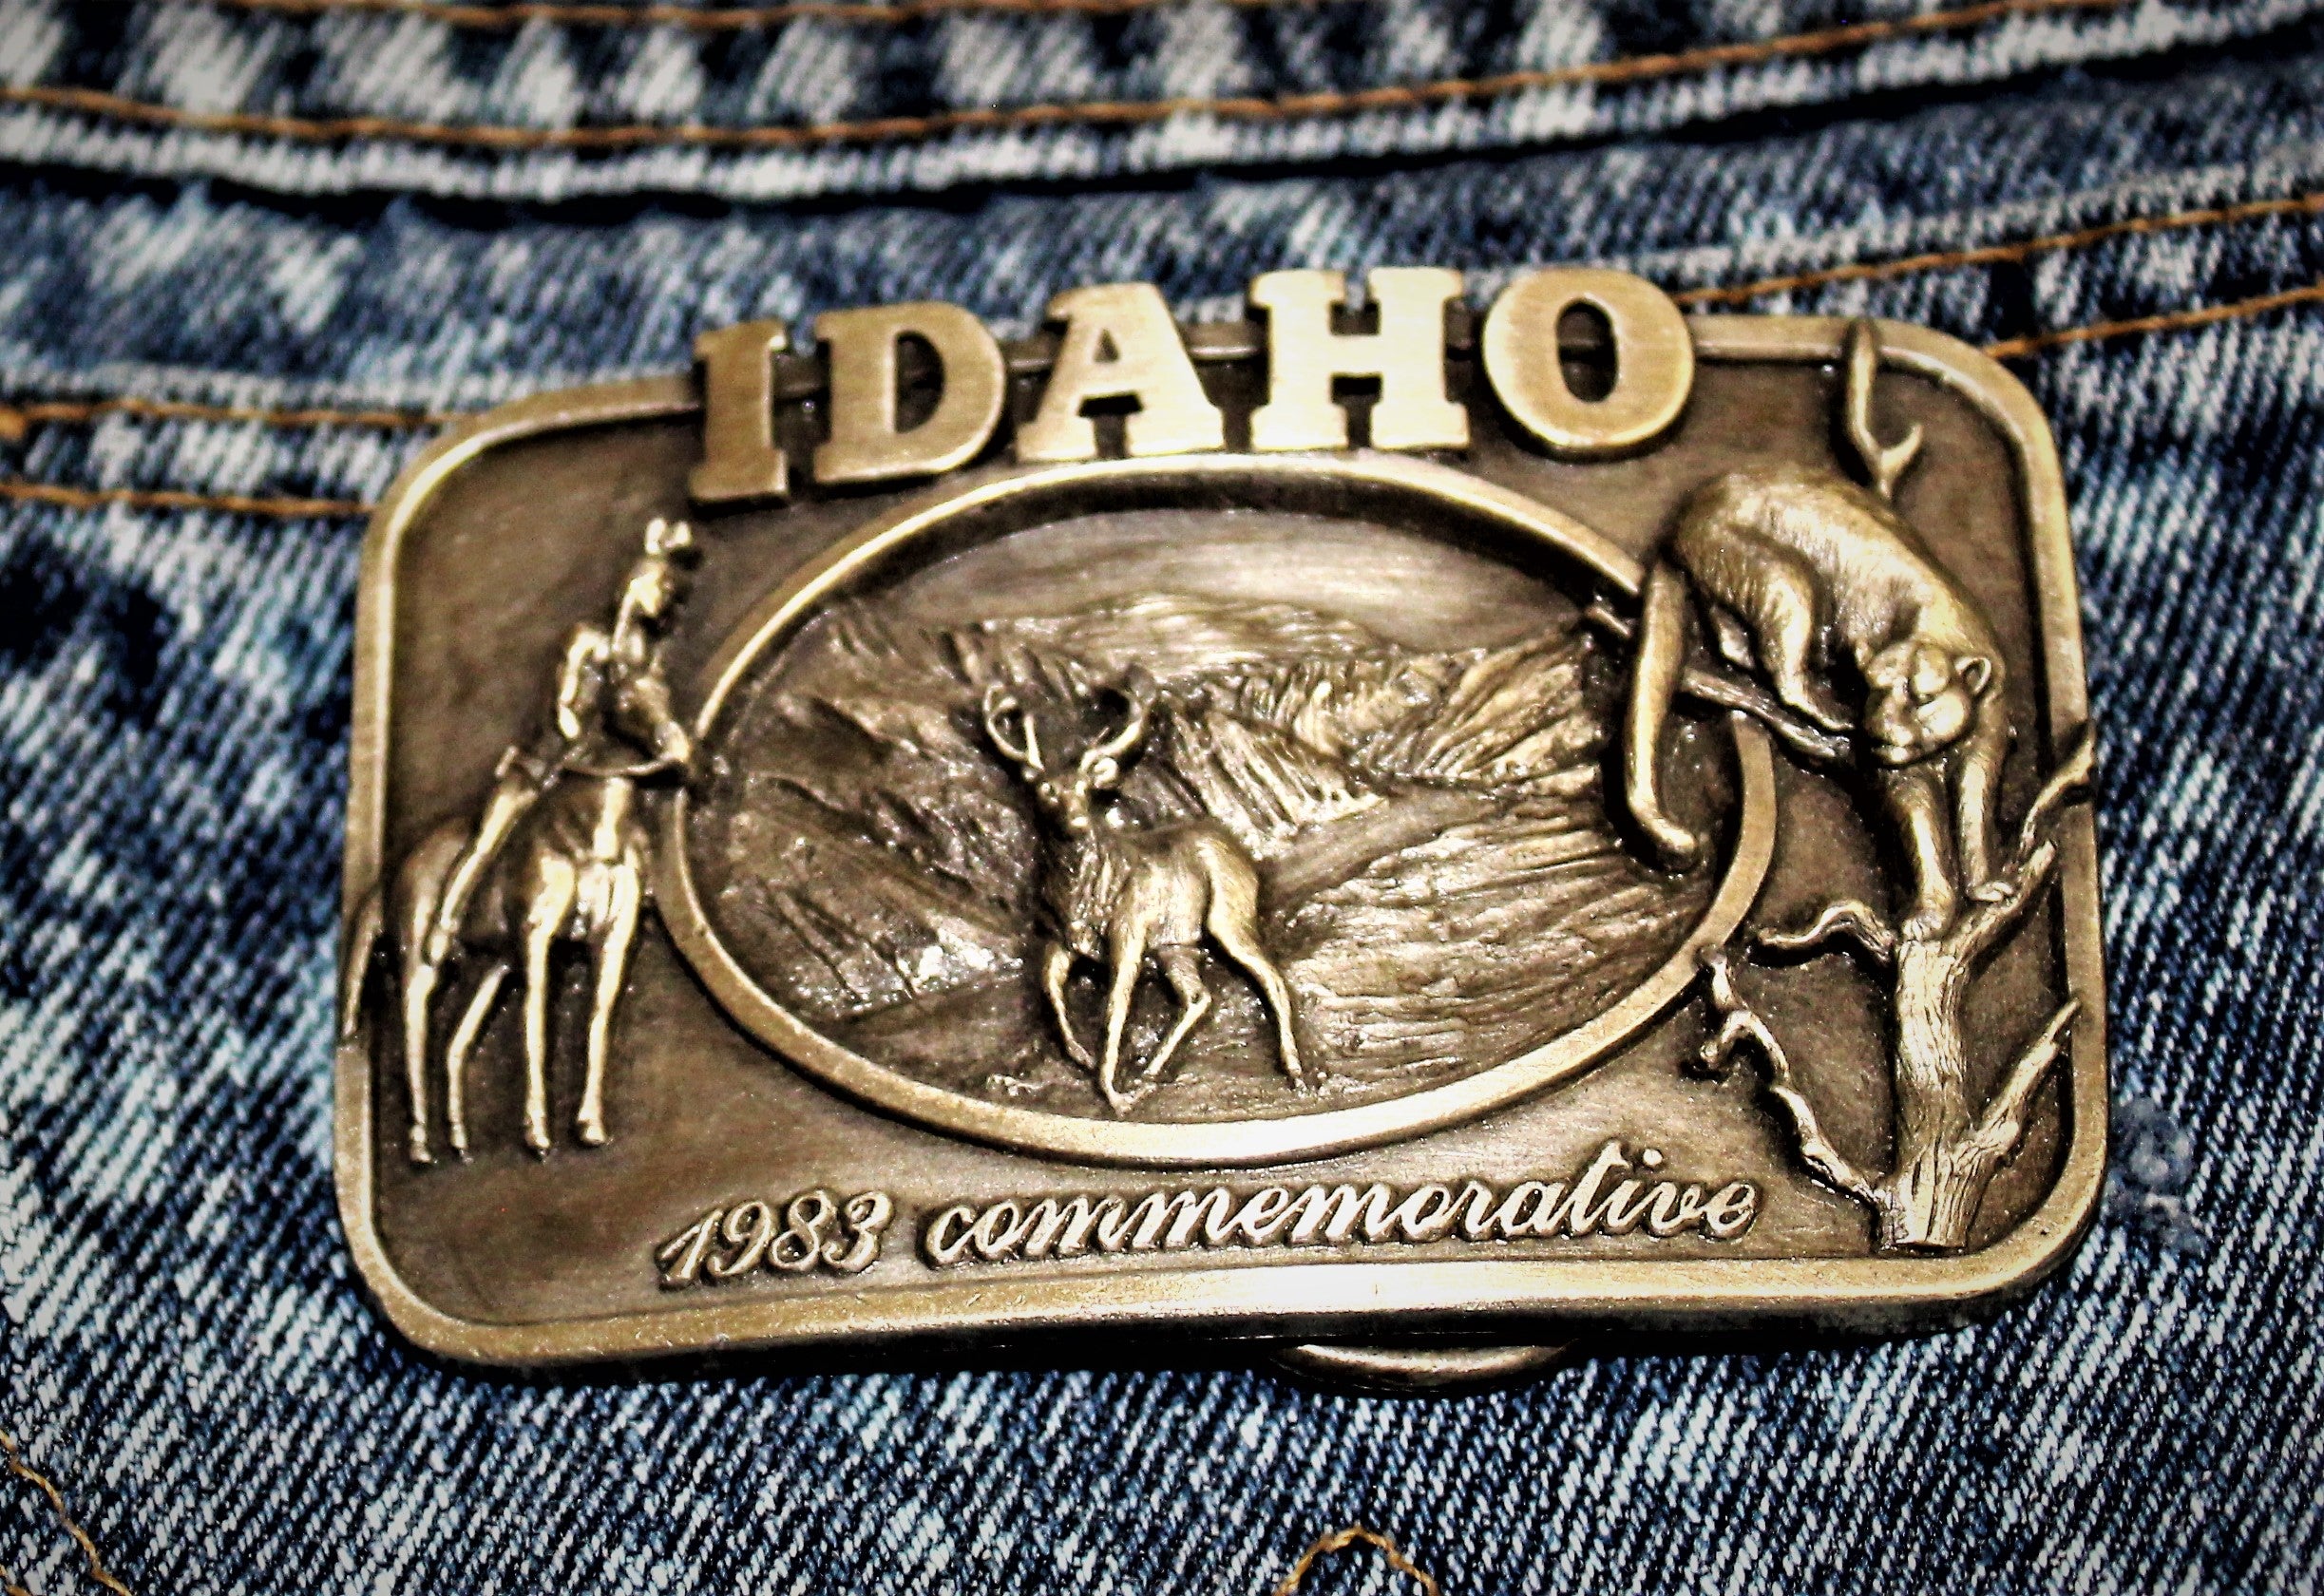 Idaho Commemorative